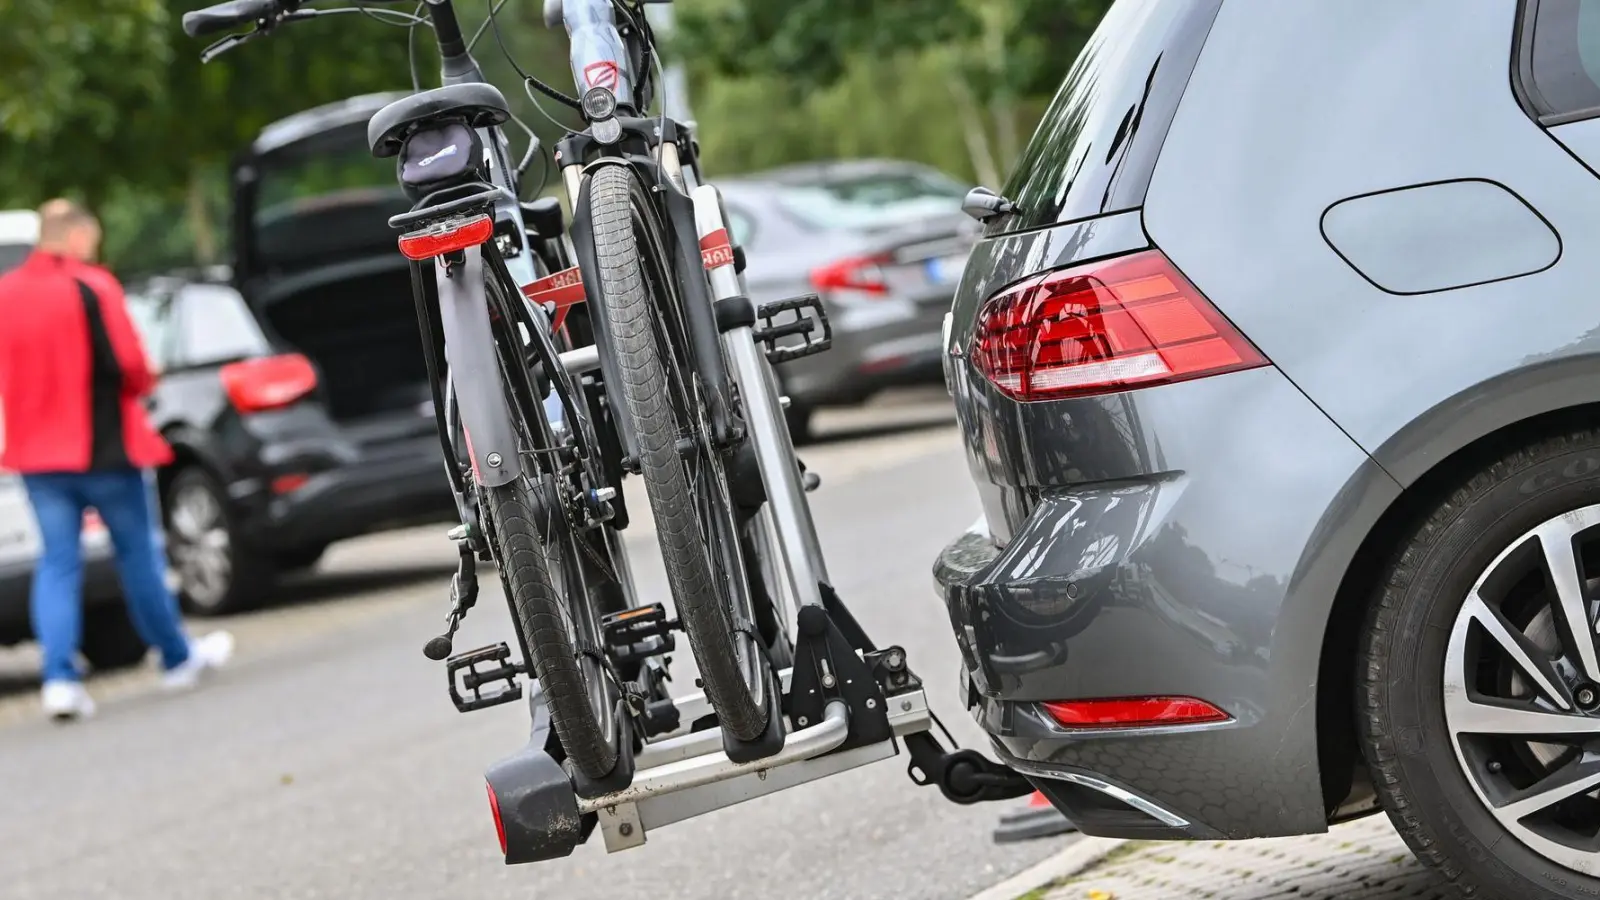 Bei der Auswahl einer Anhängerkupplung für den Fahrradtransport sollte darauf geachtet werden, dass sie den erforderlichen Mindestwerten entspricht. (Foto: Patrick Pleul/dpa)